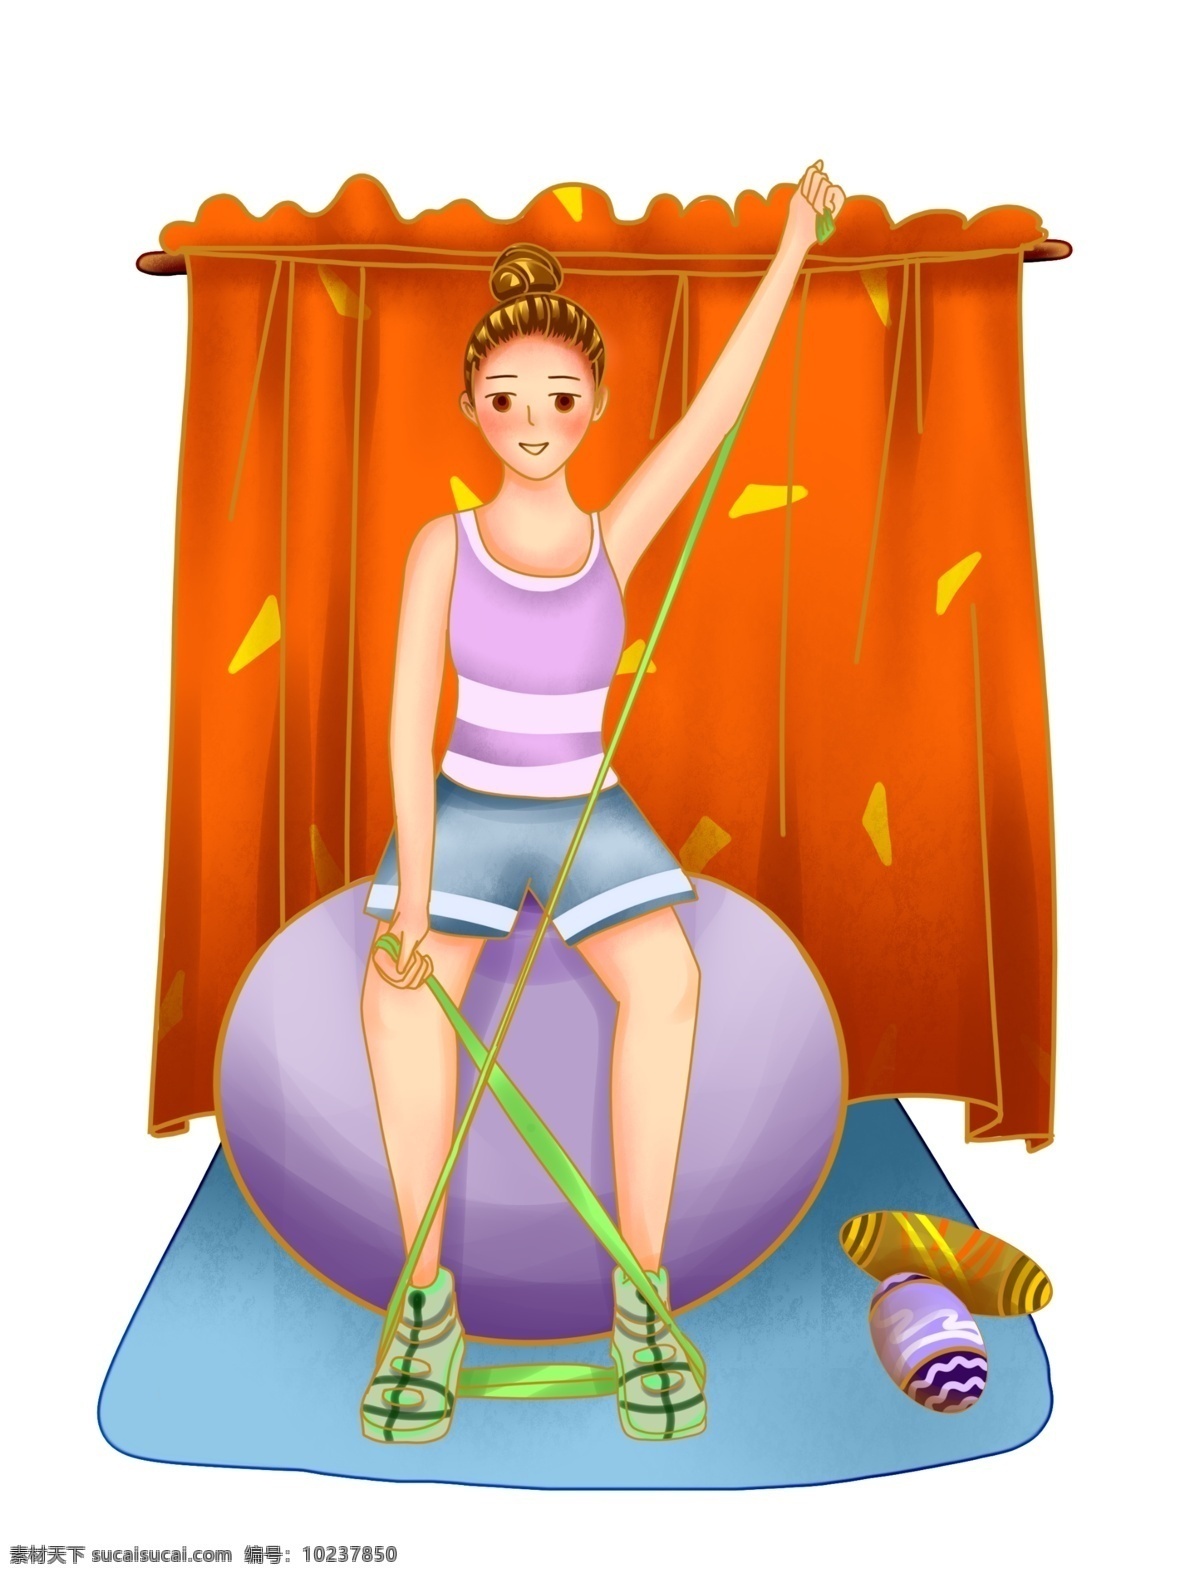 健身球 健身 女孩 插画 运动健身人物 紫色的健身球 黄色的绳子 卡通人物 健身的小女孩 漂亮的小女孩